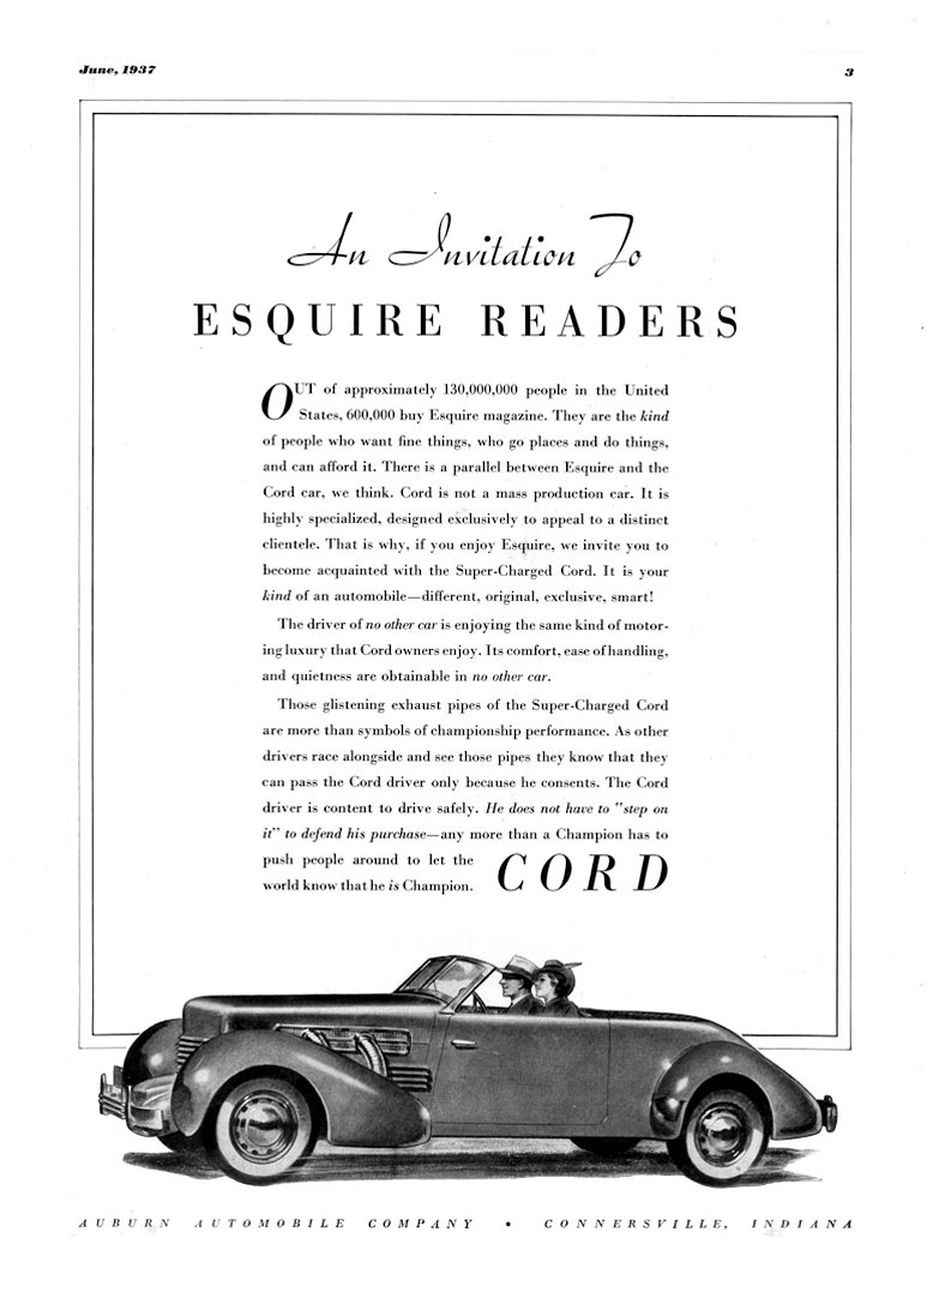 1937 Cord Ad-07